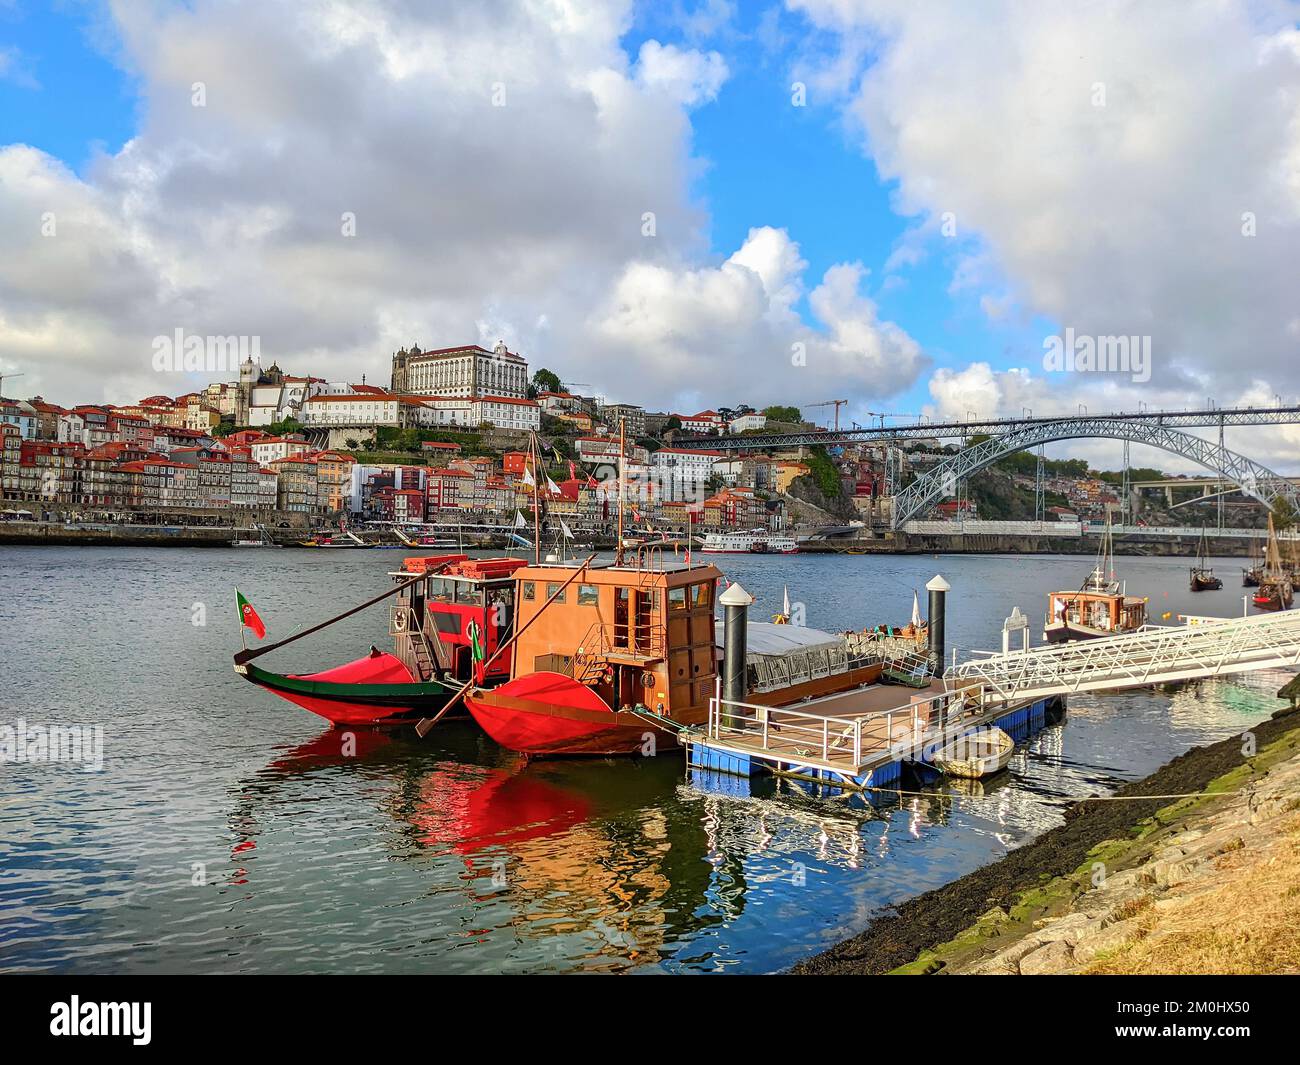 Gaia argine con barche da vino tradizionali ormeggiate, paesaggio urbano con ponte Dom Luis, Porto, Portogallo Foto Stock